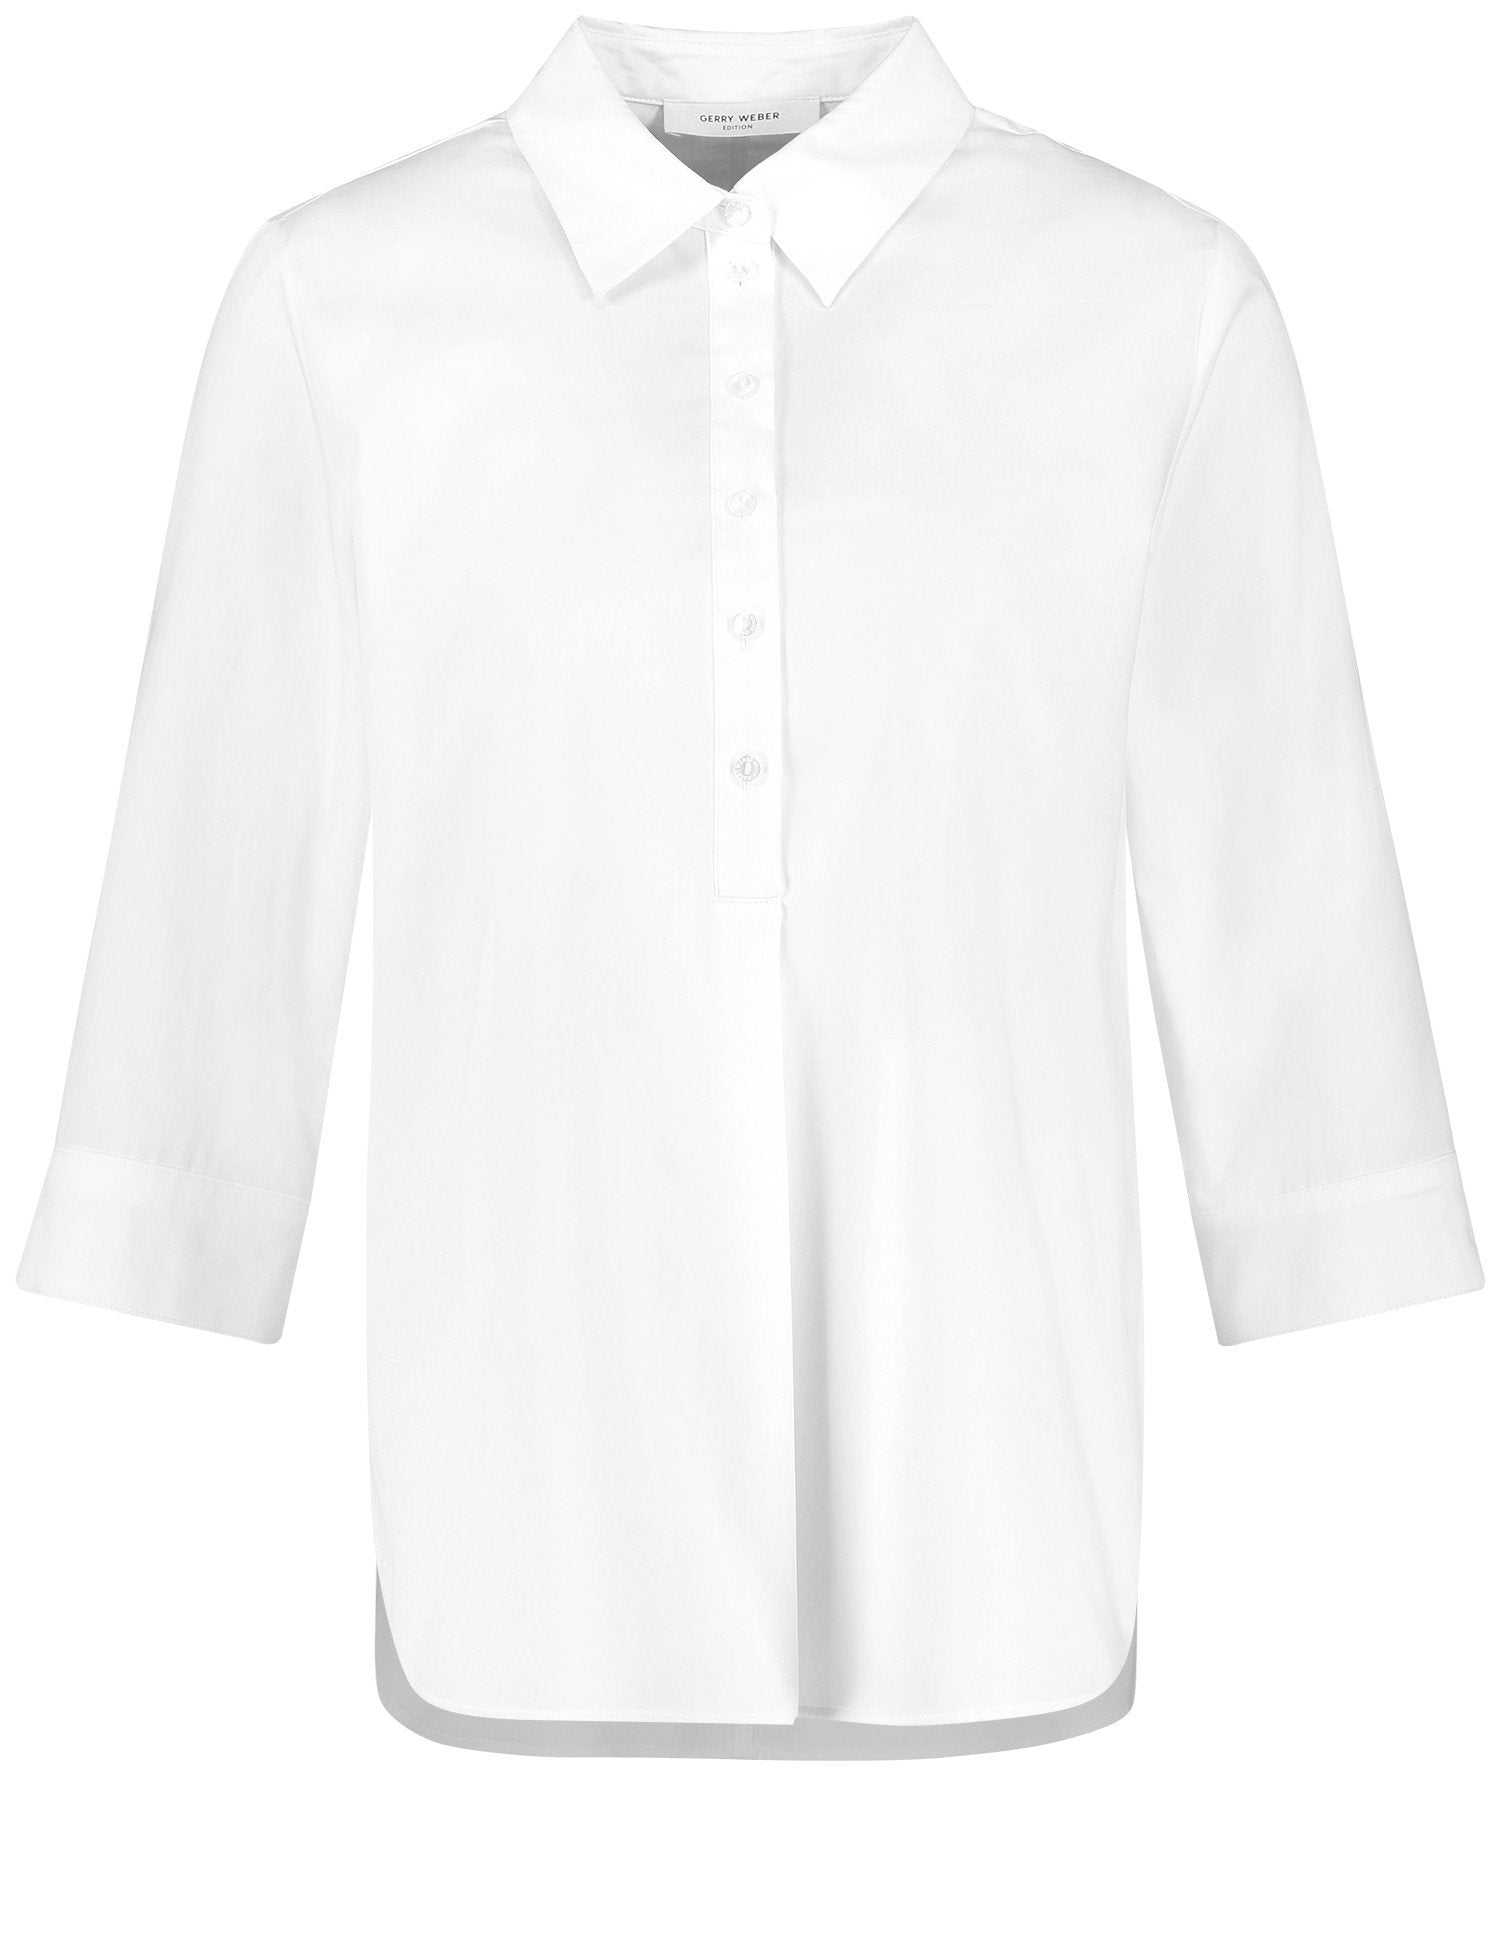 White 3-4 Sleeve Button Down Shirt _160065-66401_99600_01